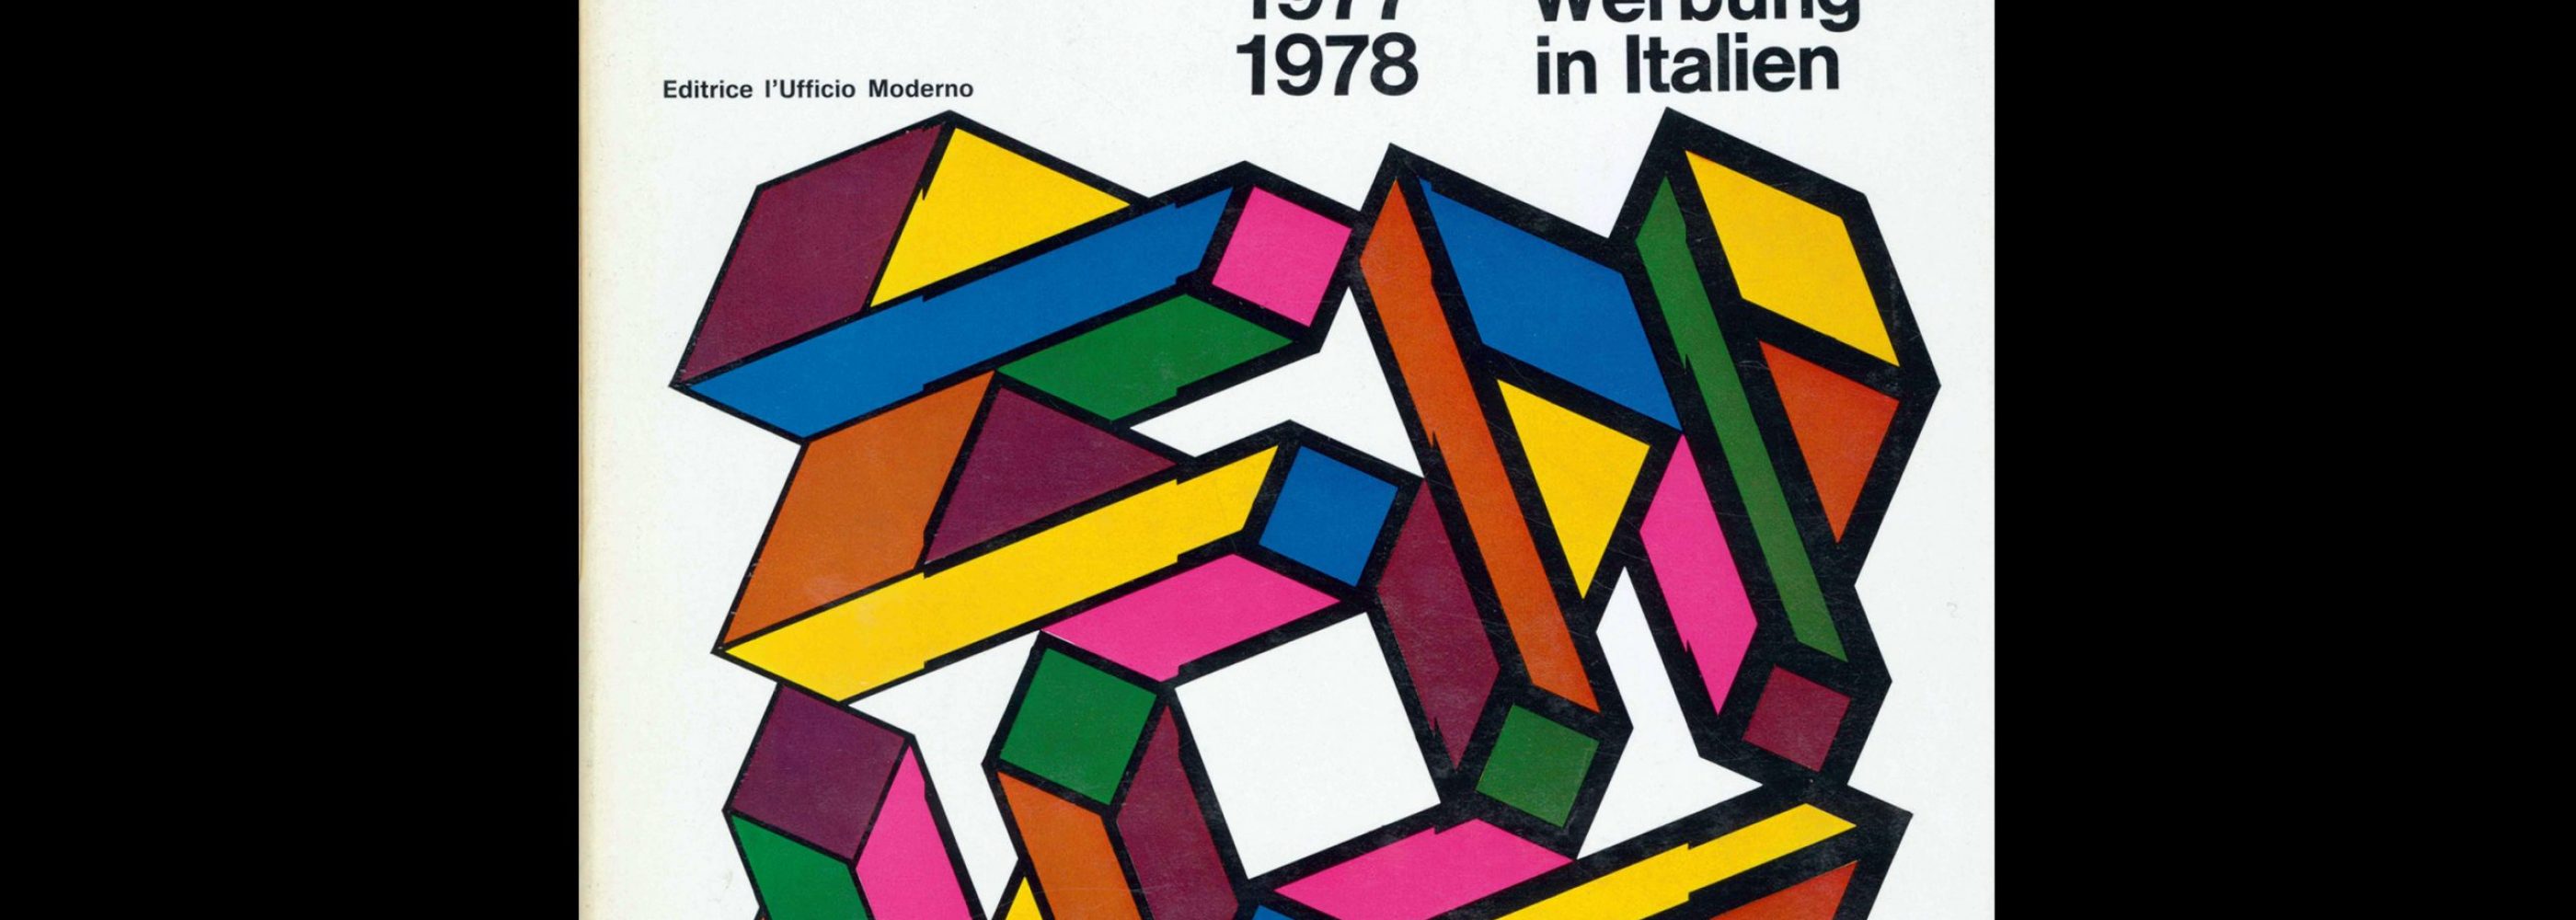 Pubblicità in Italia 1977-78. Cover design by Franco Grignani